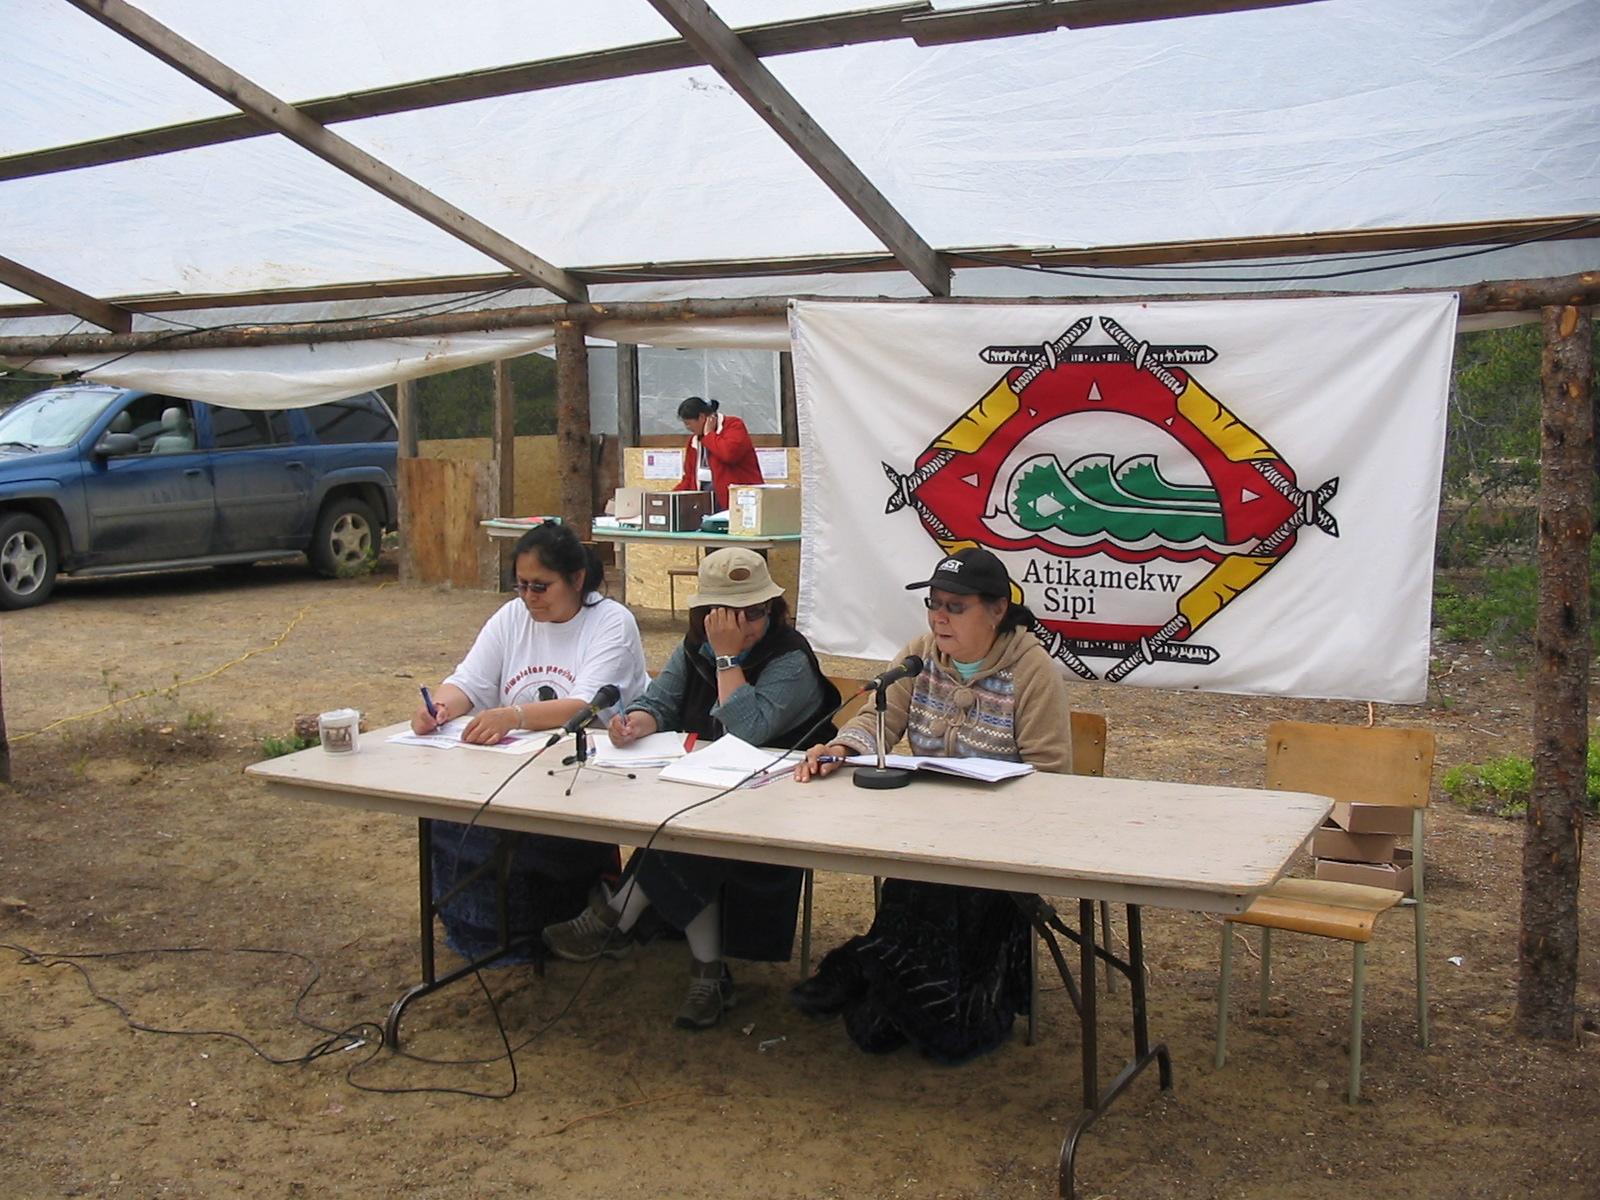 The Atikamekw First Nation has a 7,000 population. (Photo: http://www.atikamekwsipi.com)